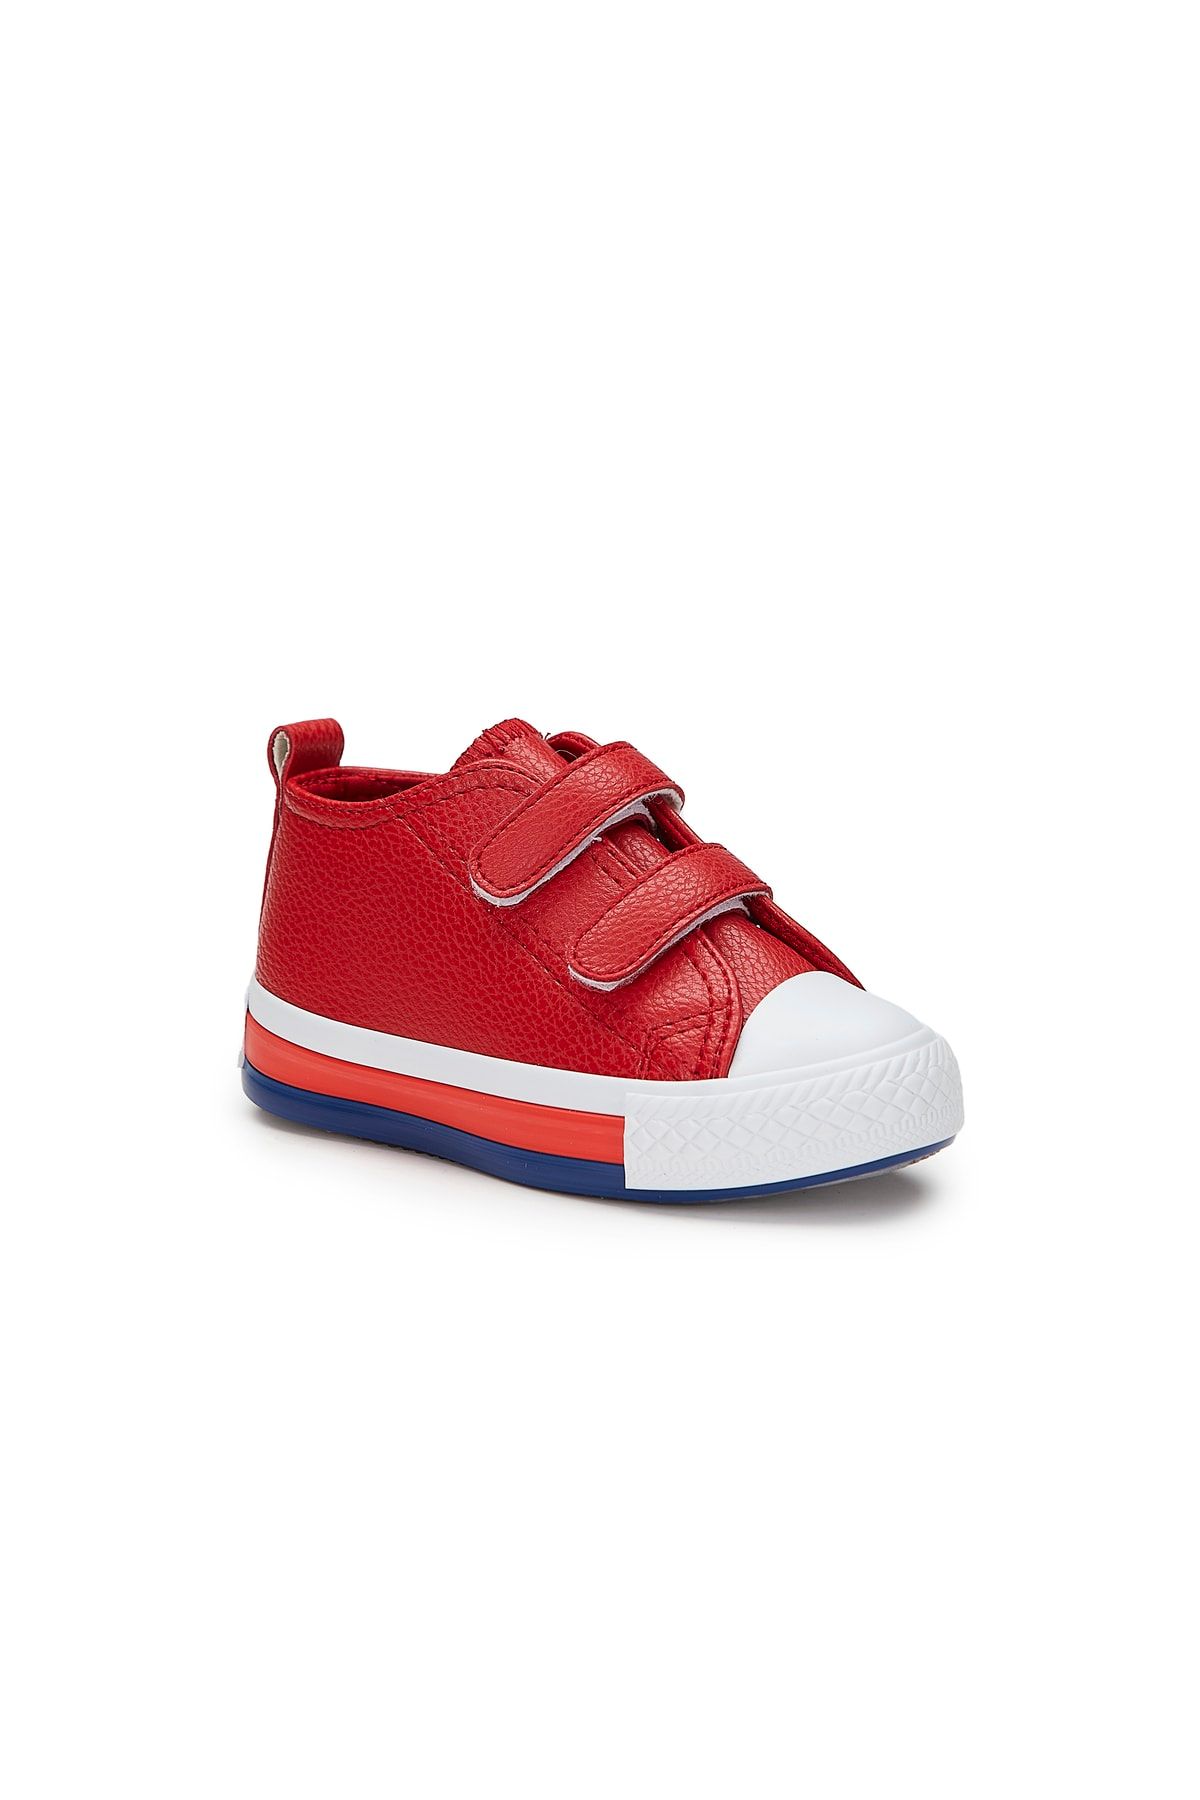 Vicco Armin Basic Unisex Bebe Kırmızı Spor Ayakkabı